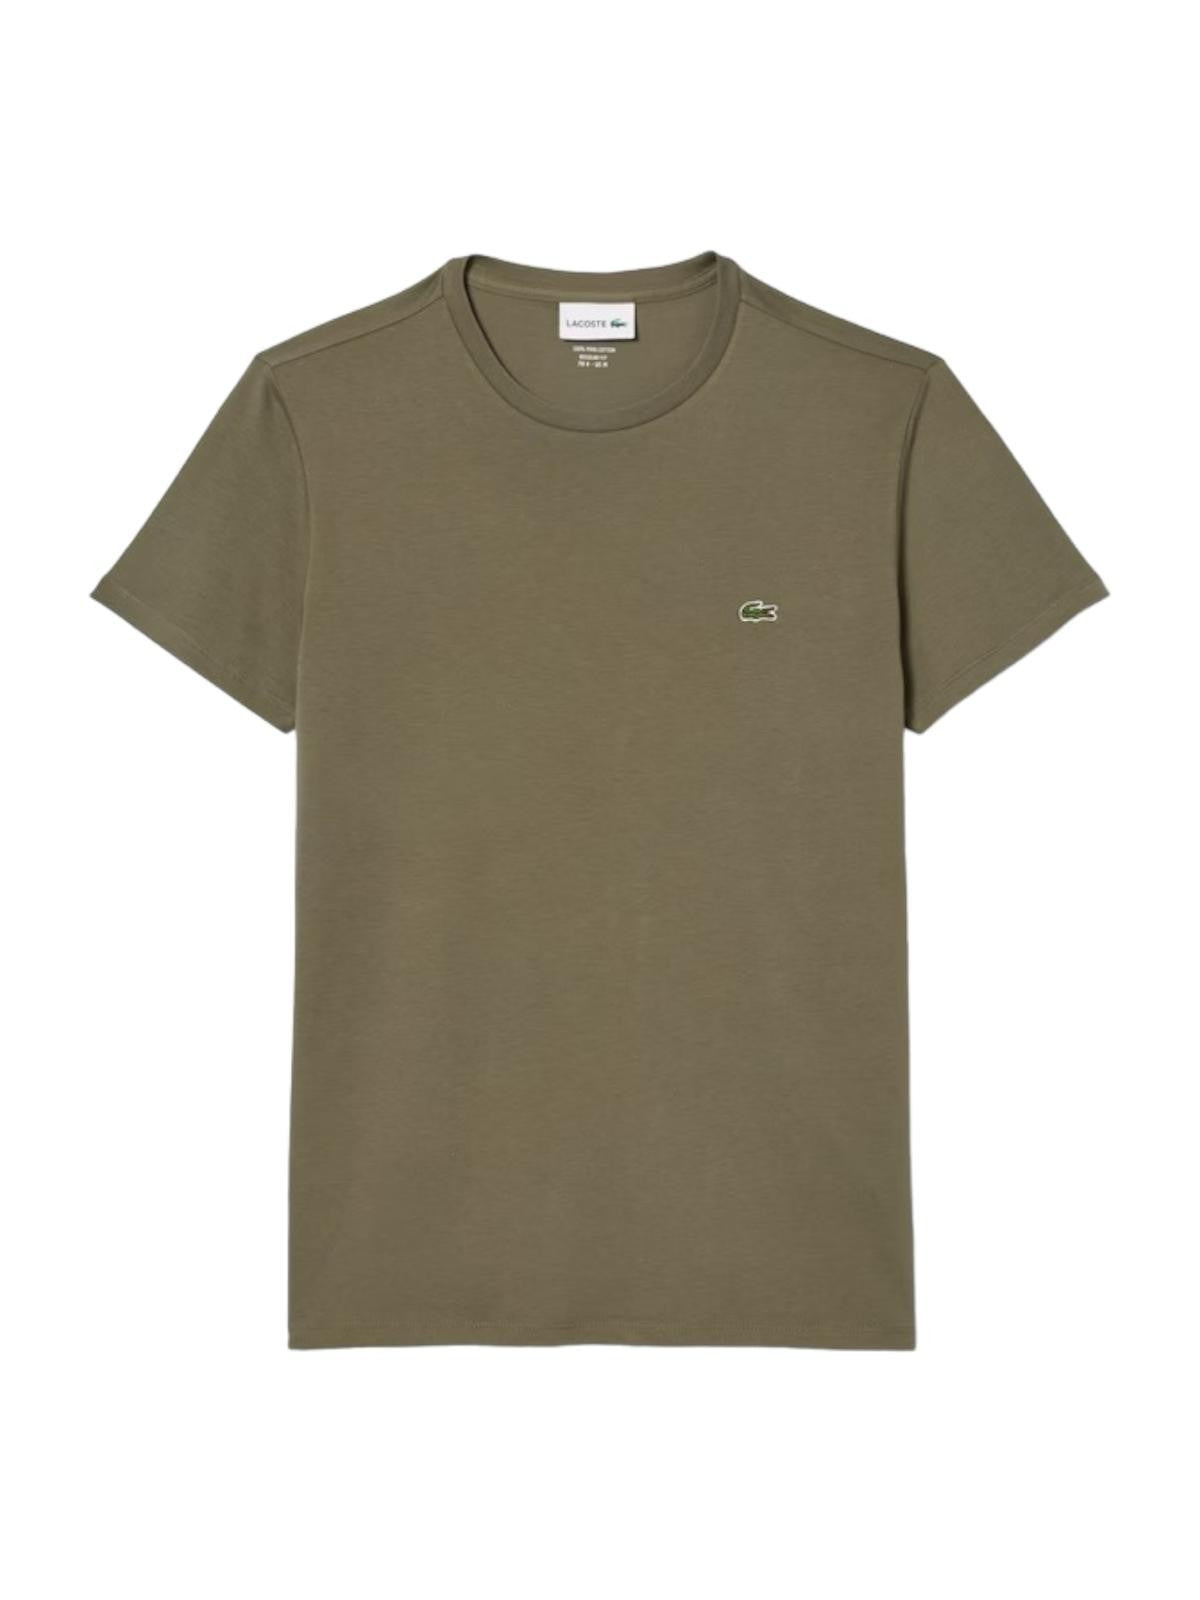 LACOSTE T-Shirt et Polo Hommes TH6709 316 Vert